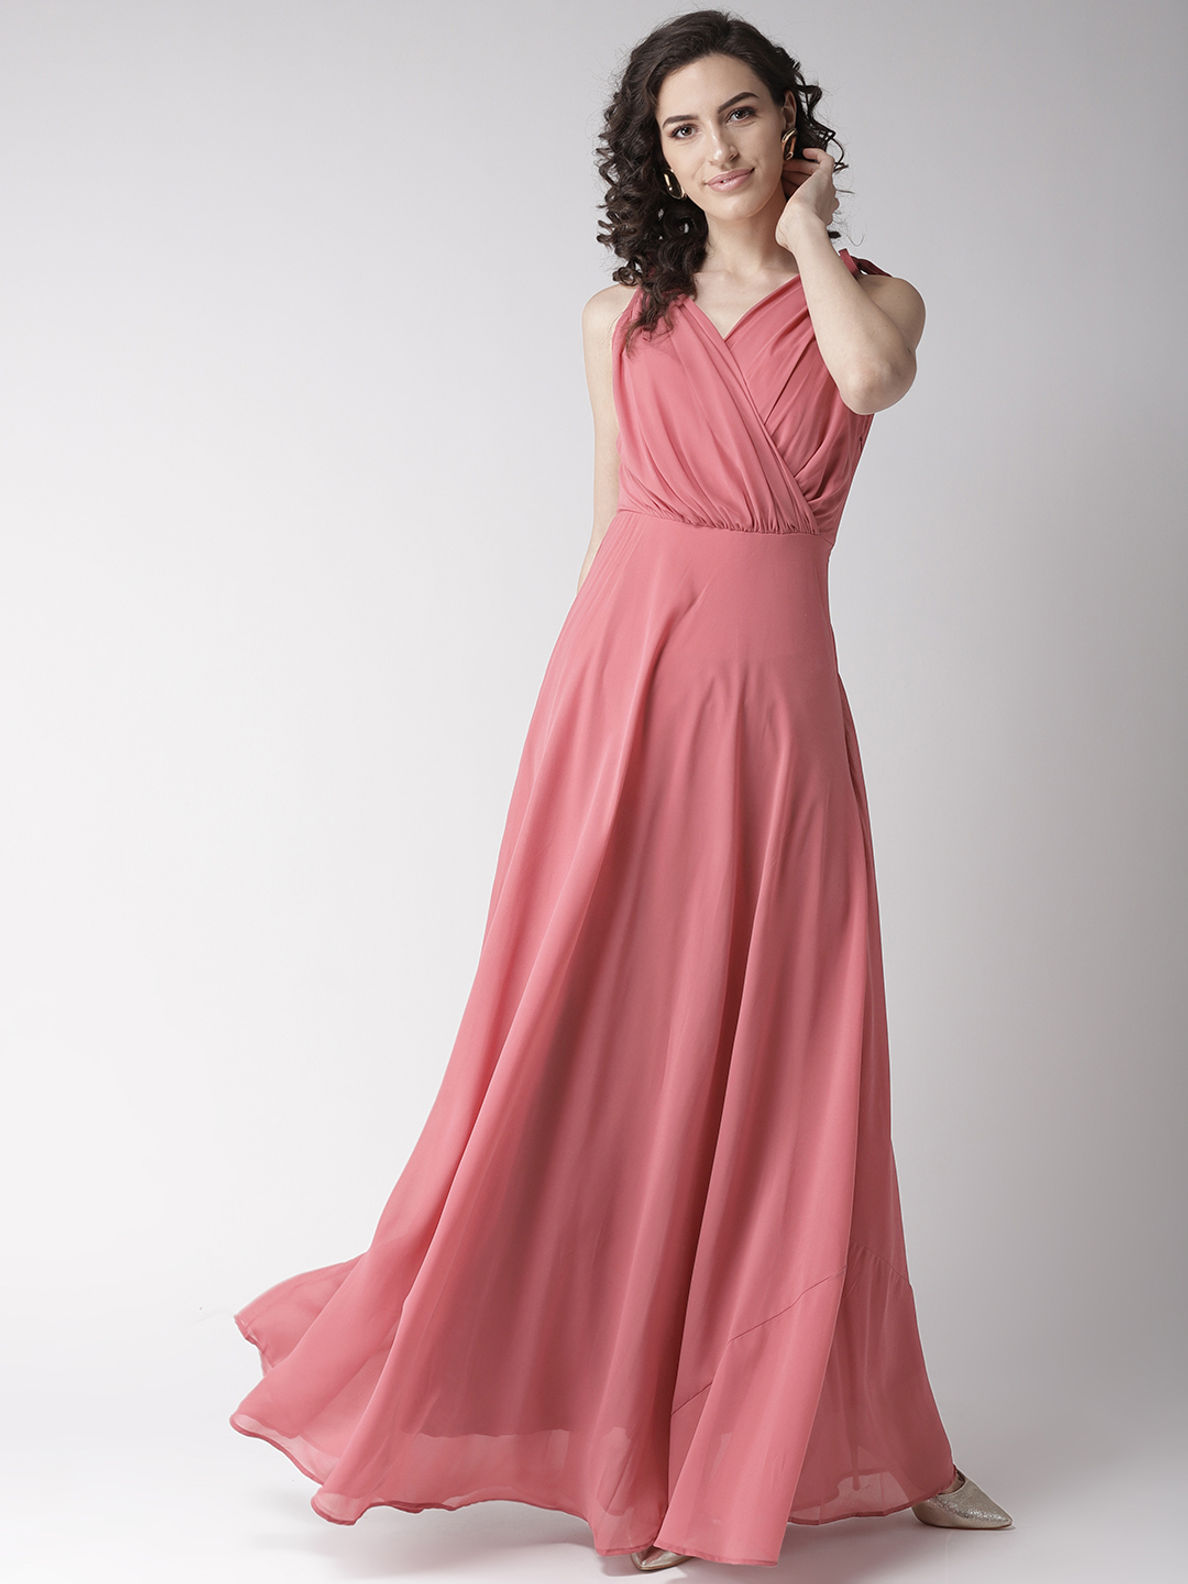 The Royals Pink Maxi Dress ...